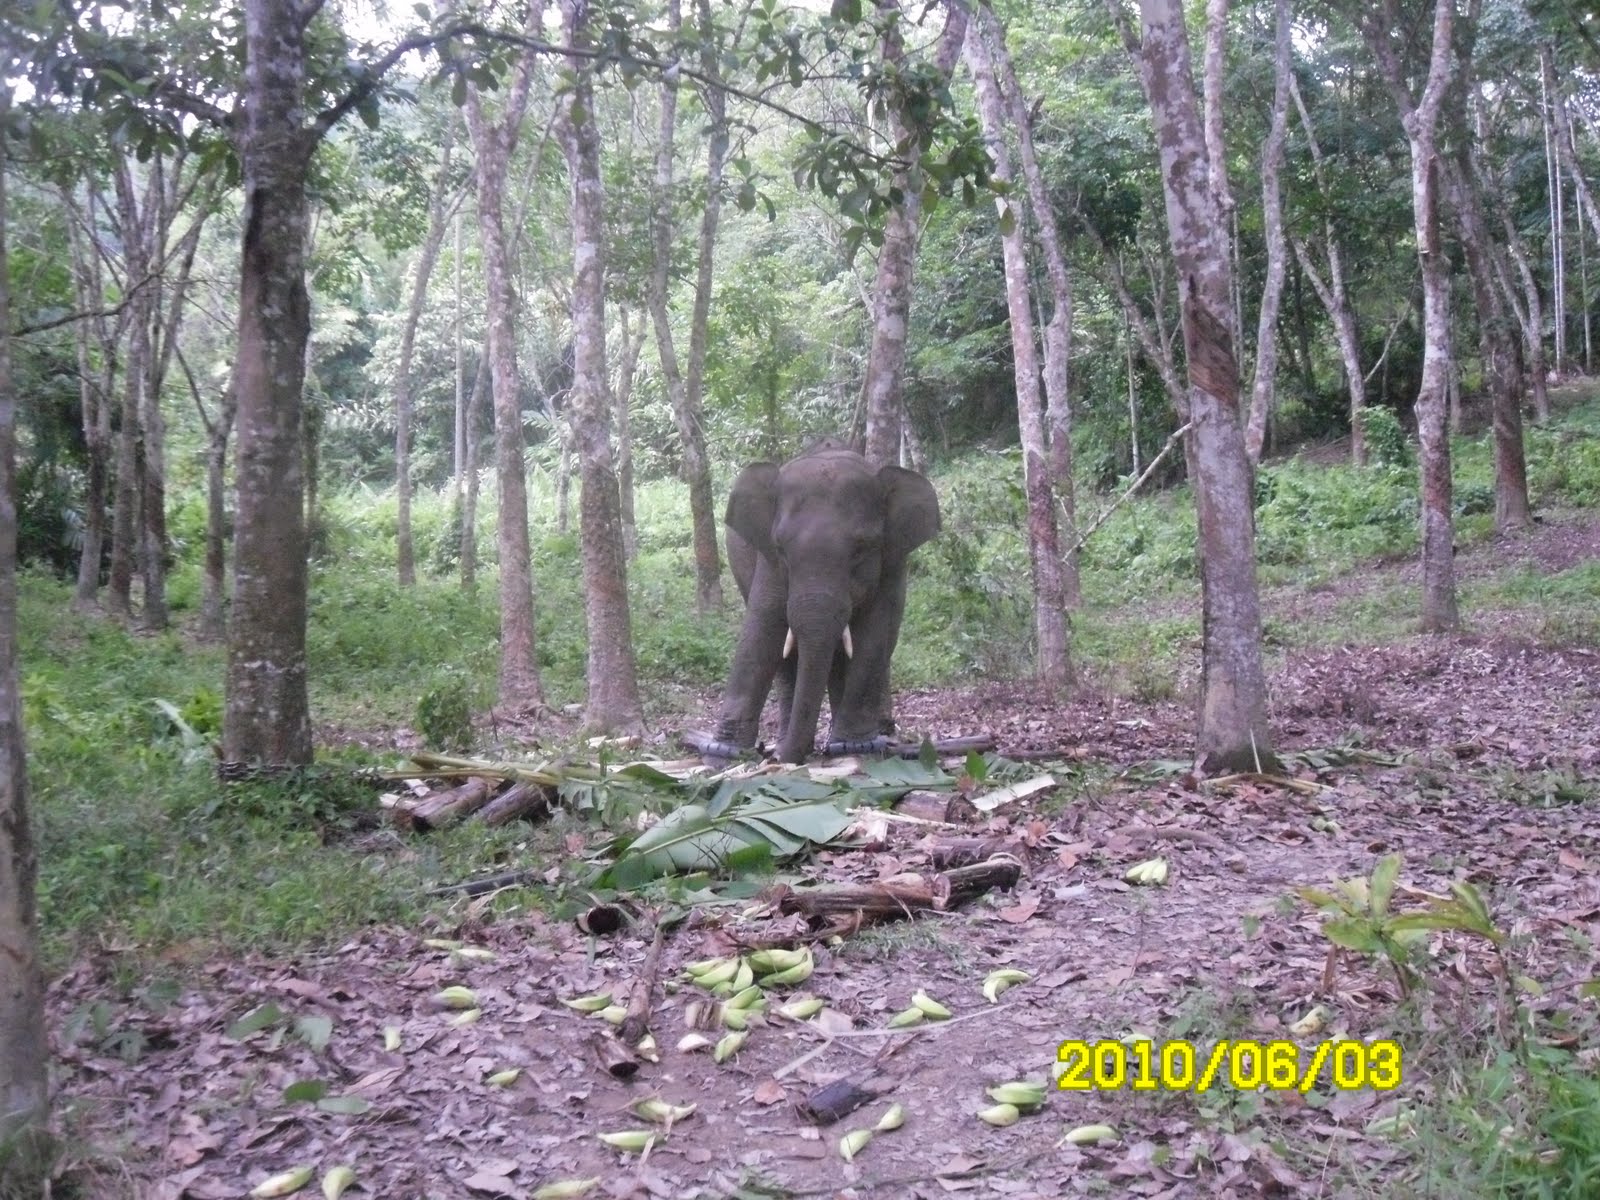 Sewangi bunga melor: gajah liar sesat di dalam kampung